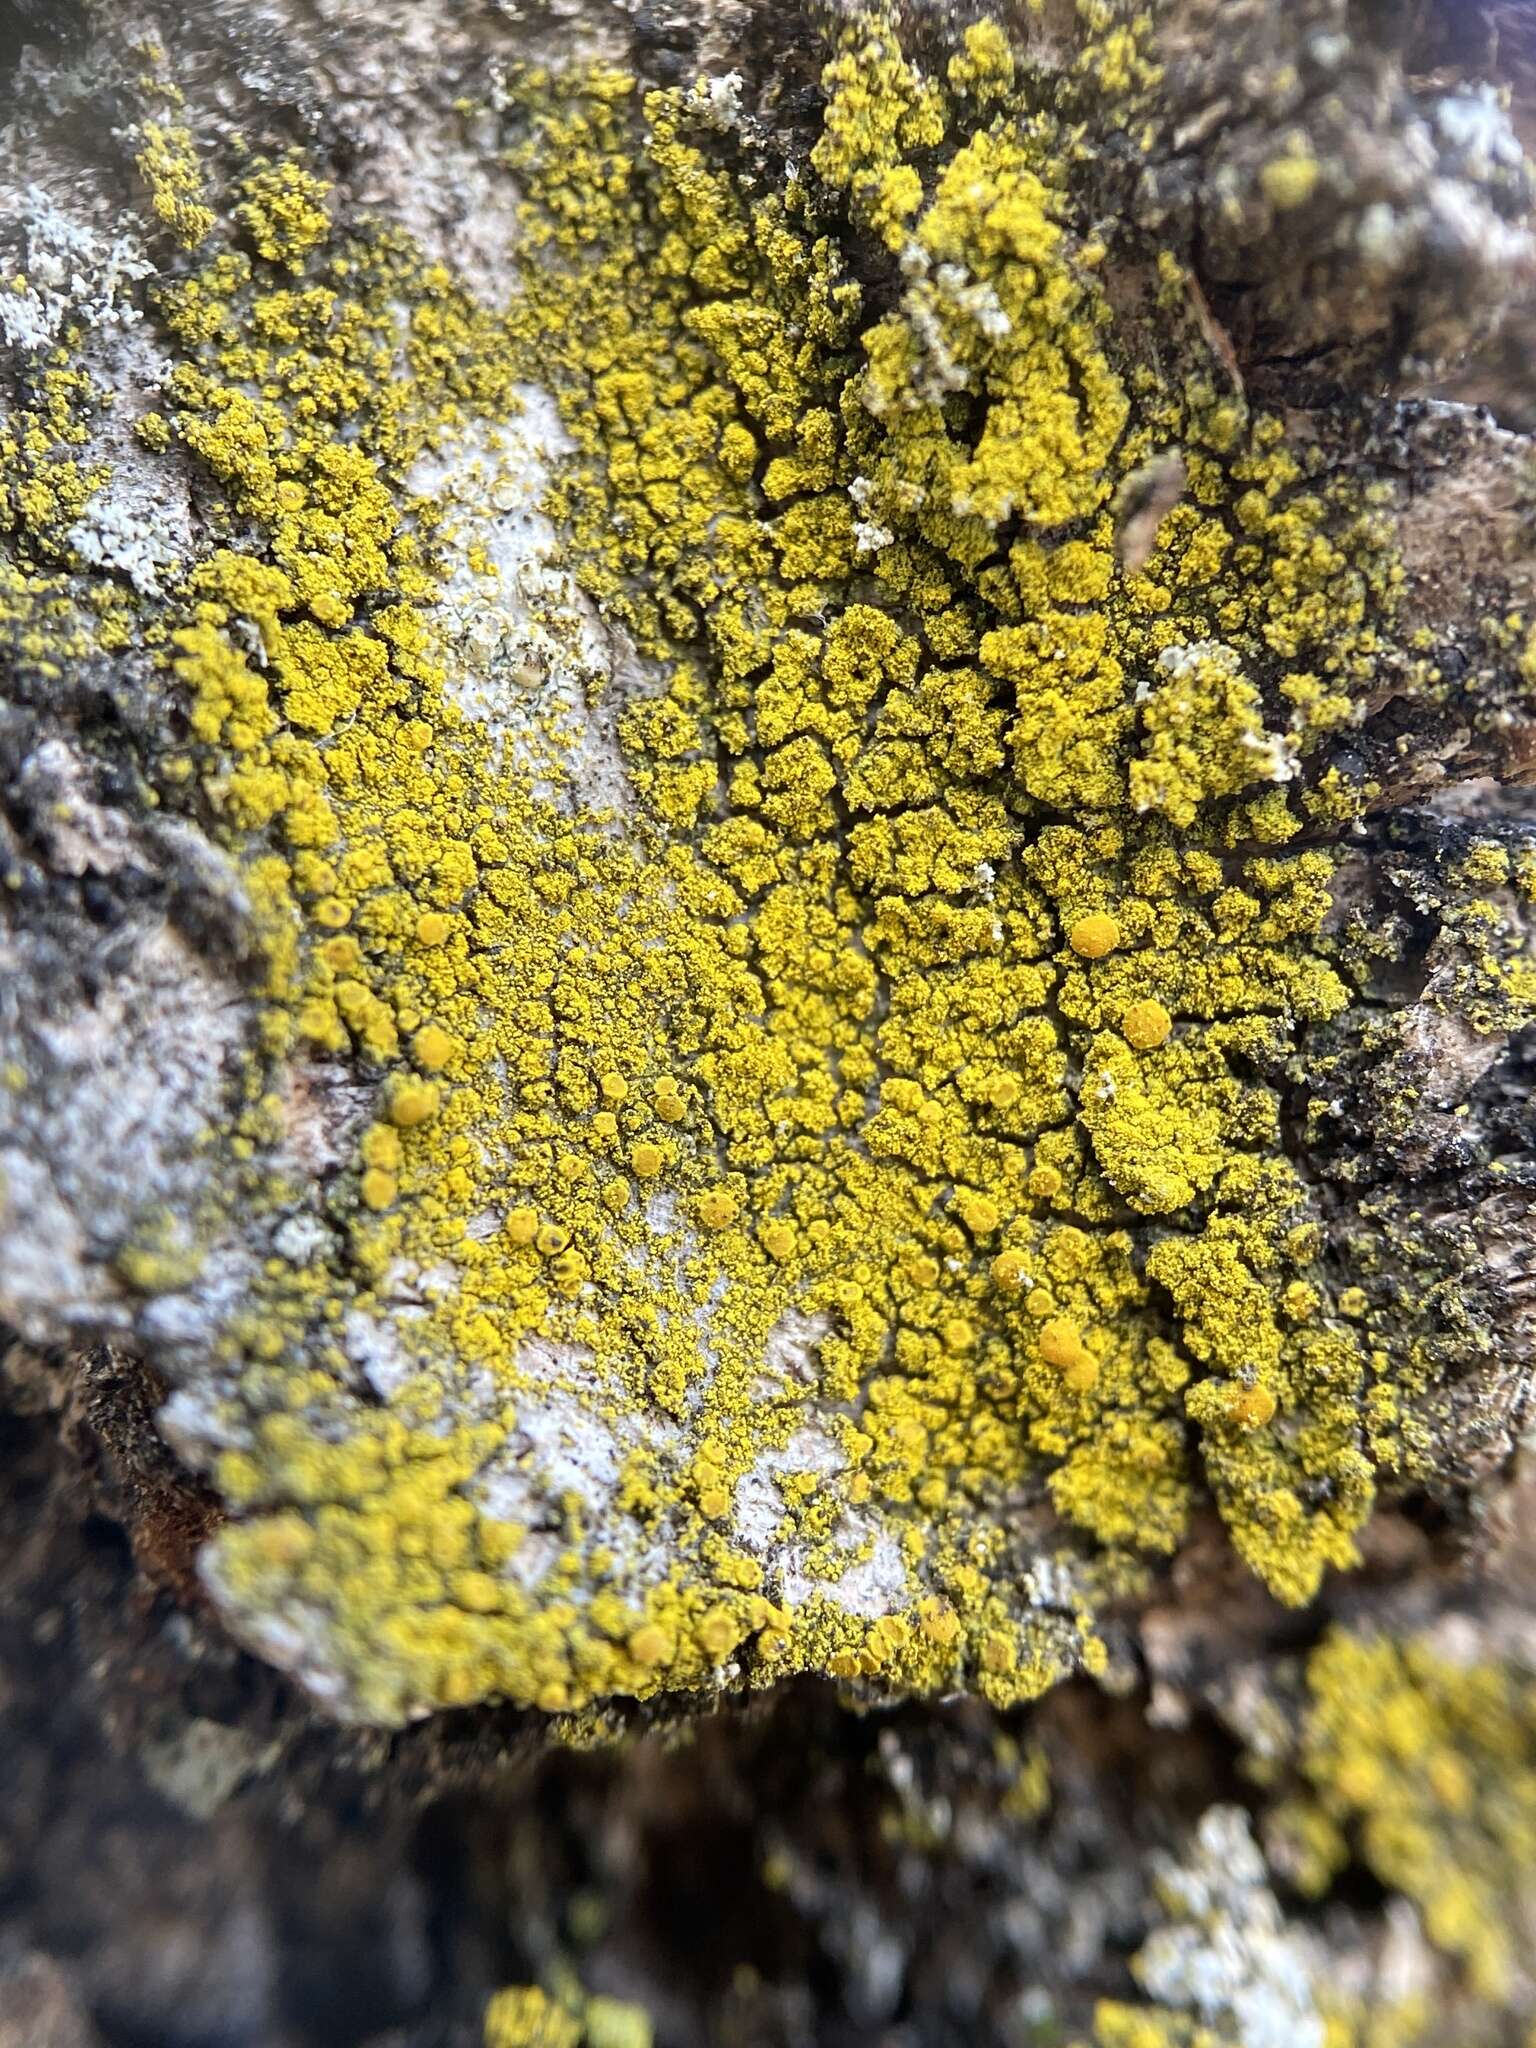 Image of eggyolk lichen